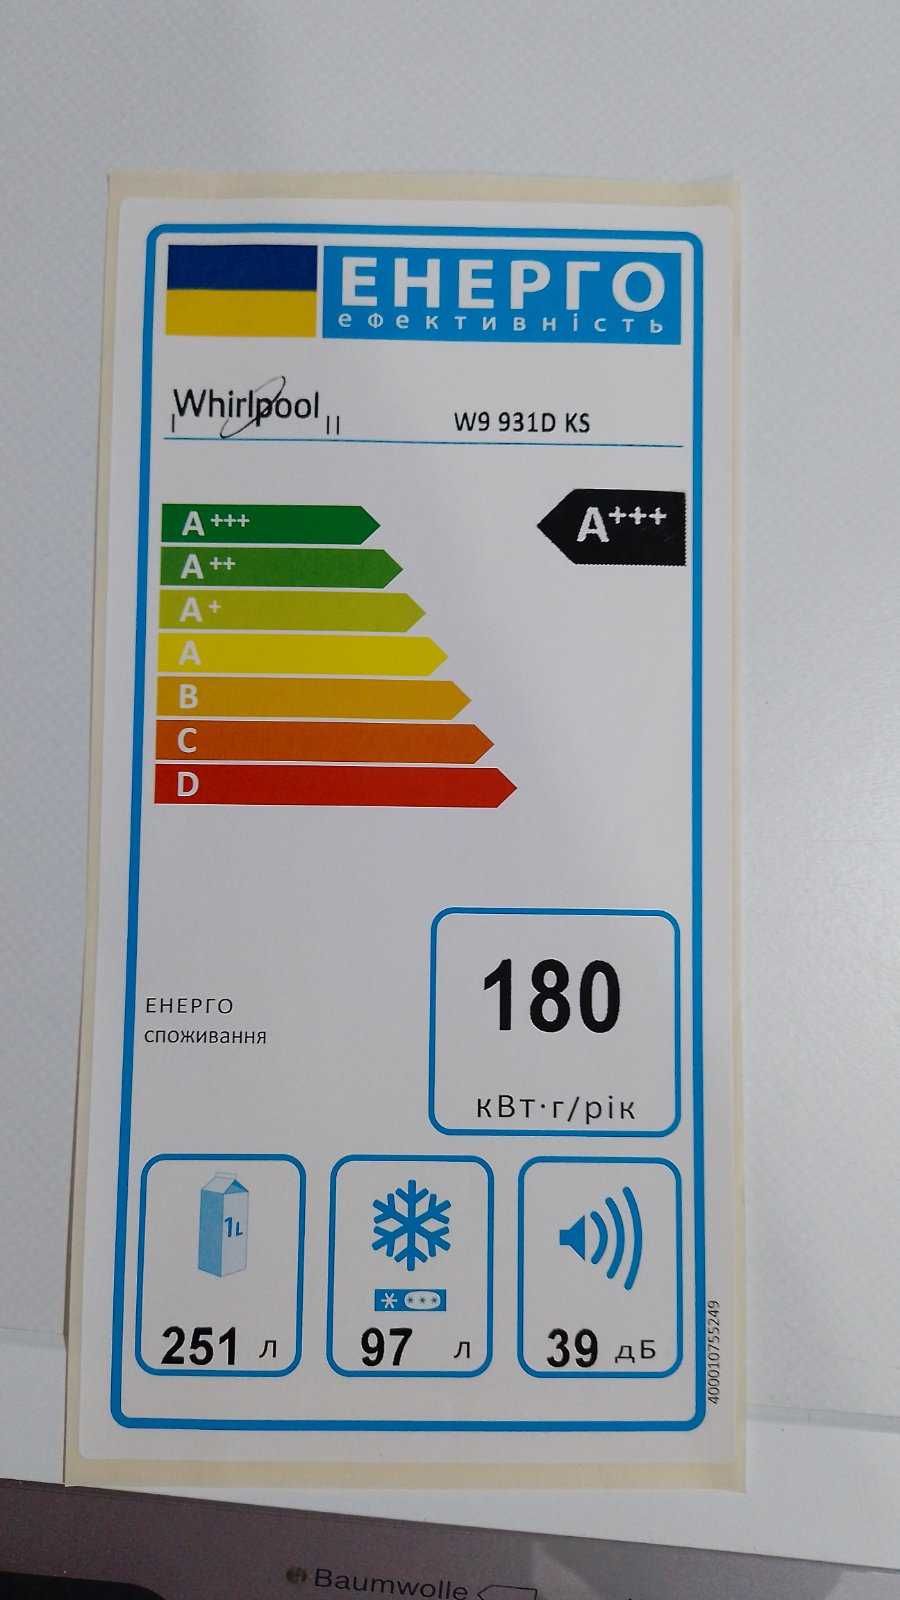 Холодильник Whirlpool W9 931D KS No Frost А+++ инвертор черный 201.1см